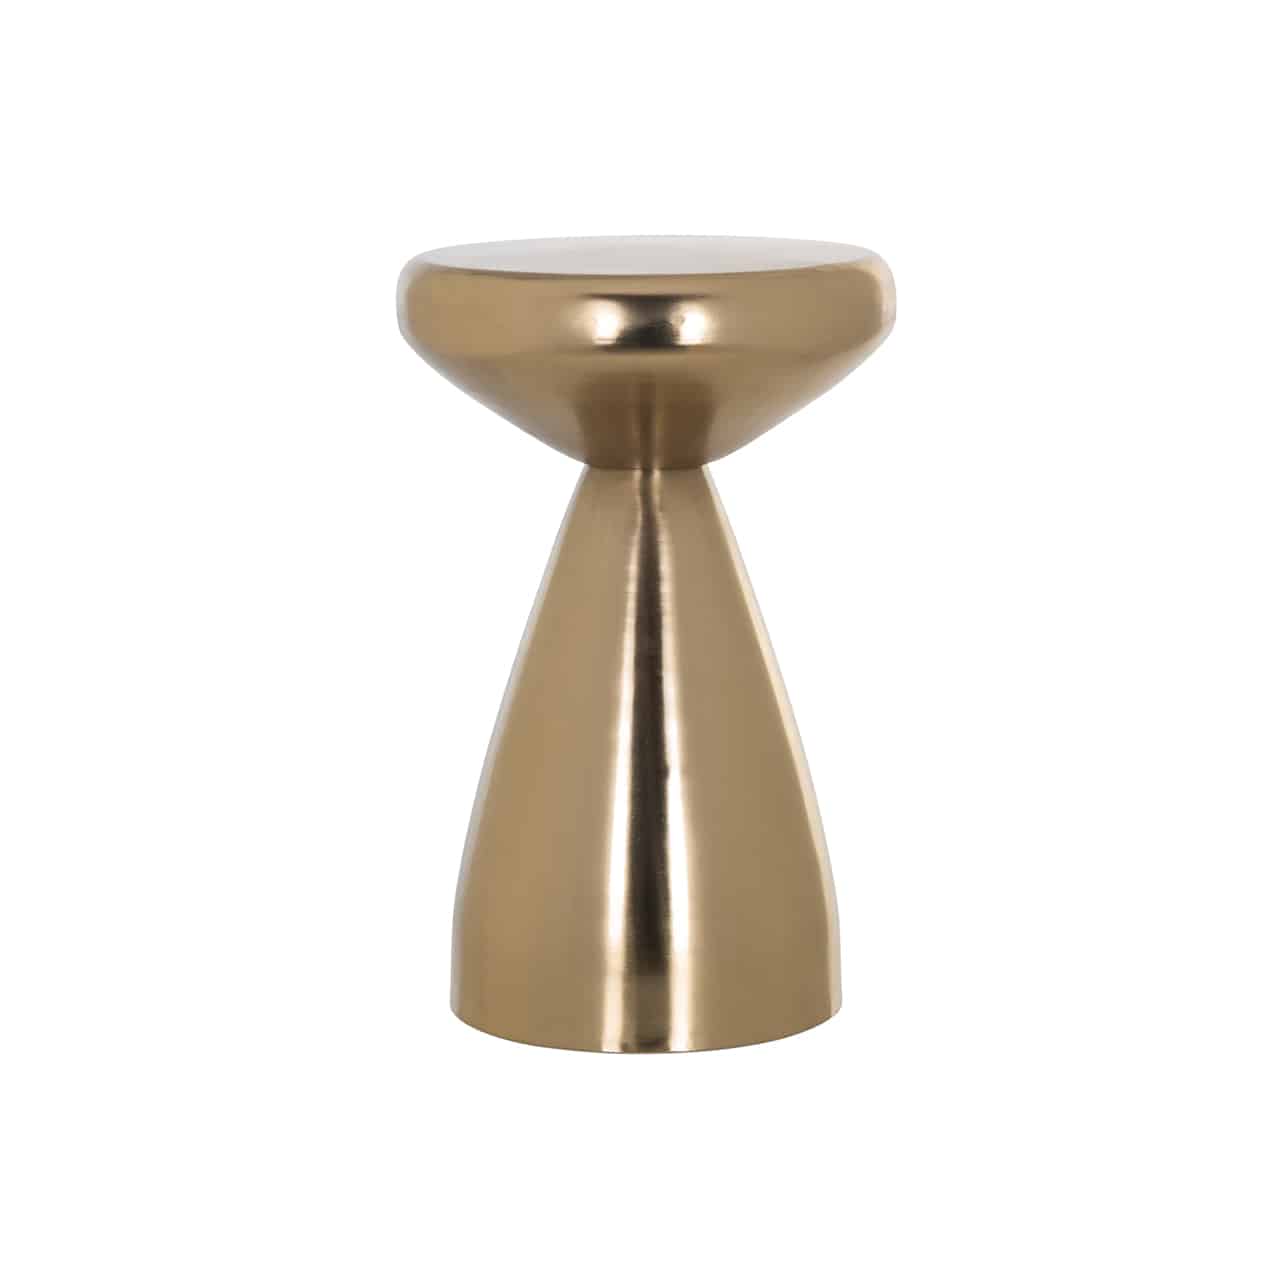 Runder, golden glänzender Beistelltisch mit einem kegelförmigen Fuß, darauf eine konisch zulaufende, runde Tischplatte.